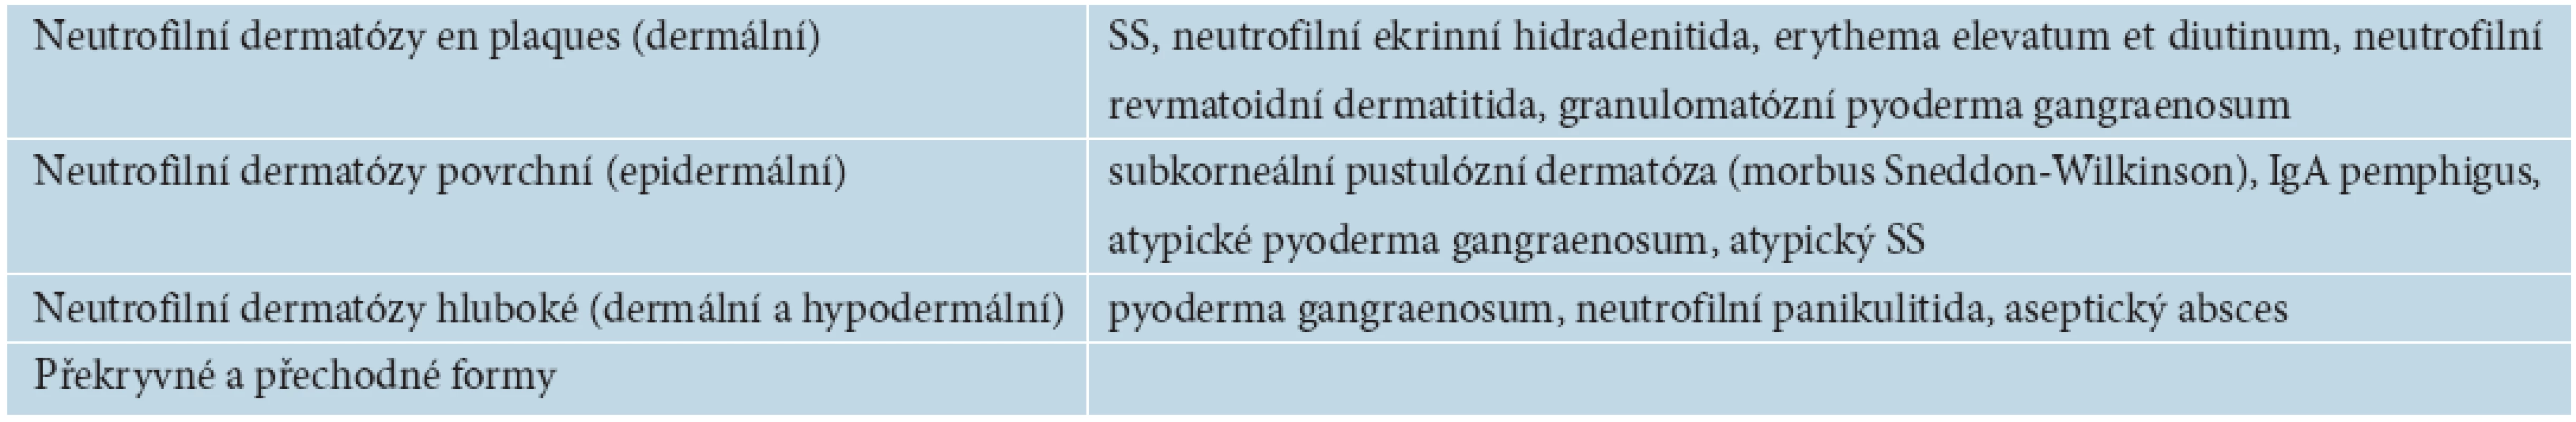 Klasifikace neutrofilních dermatóz